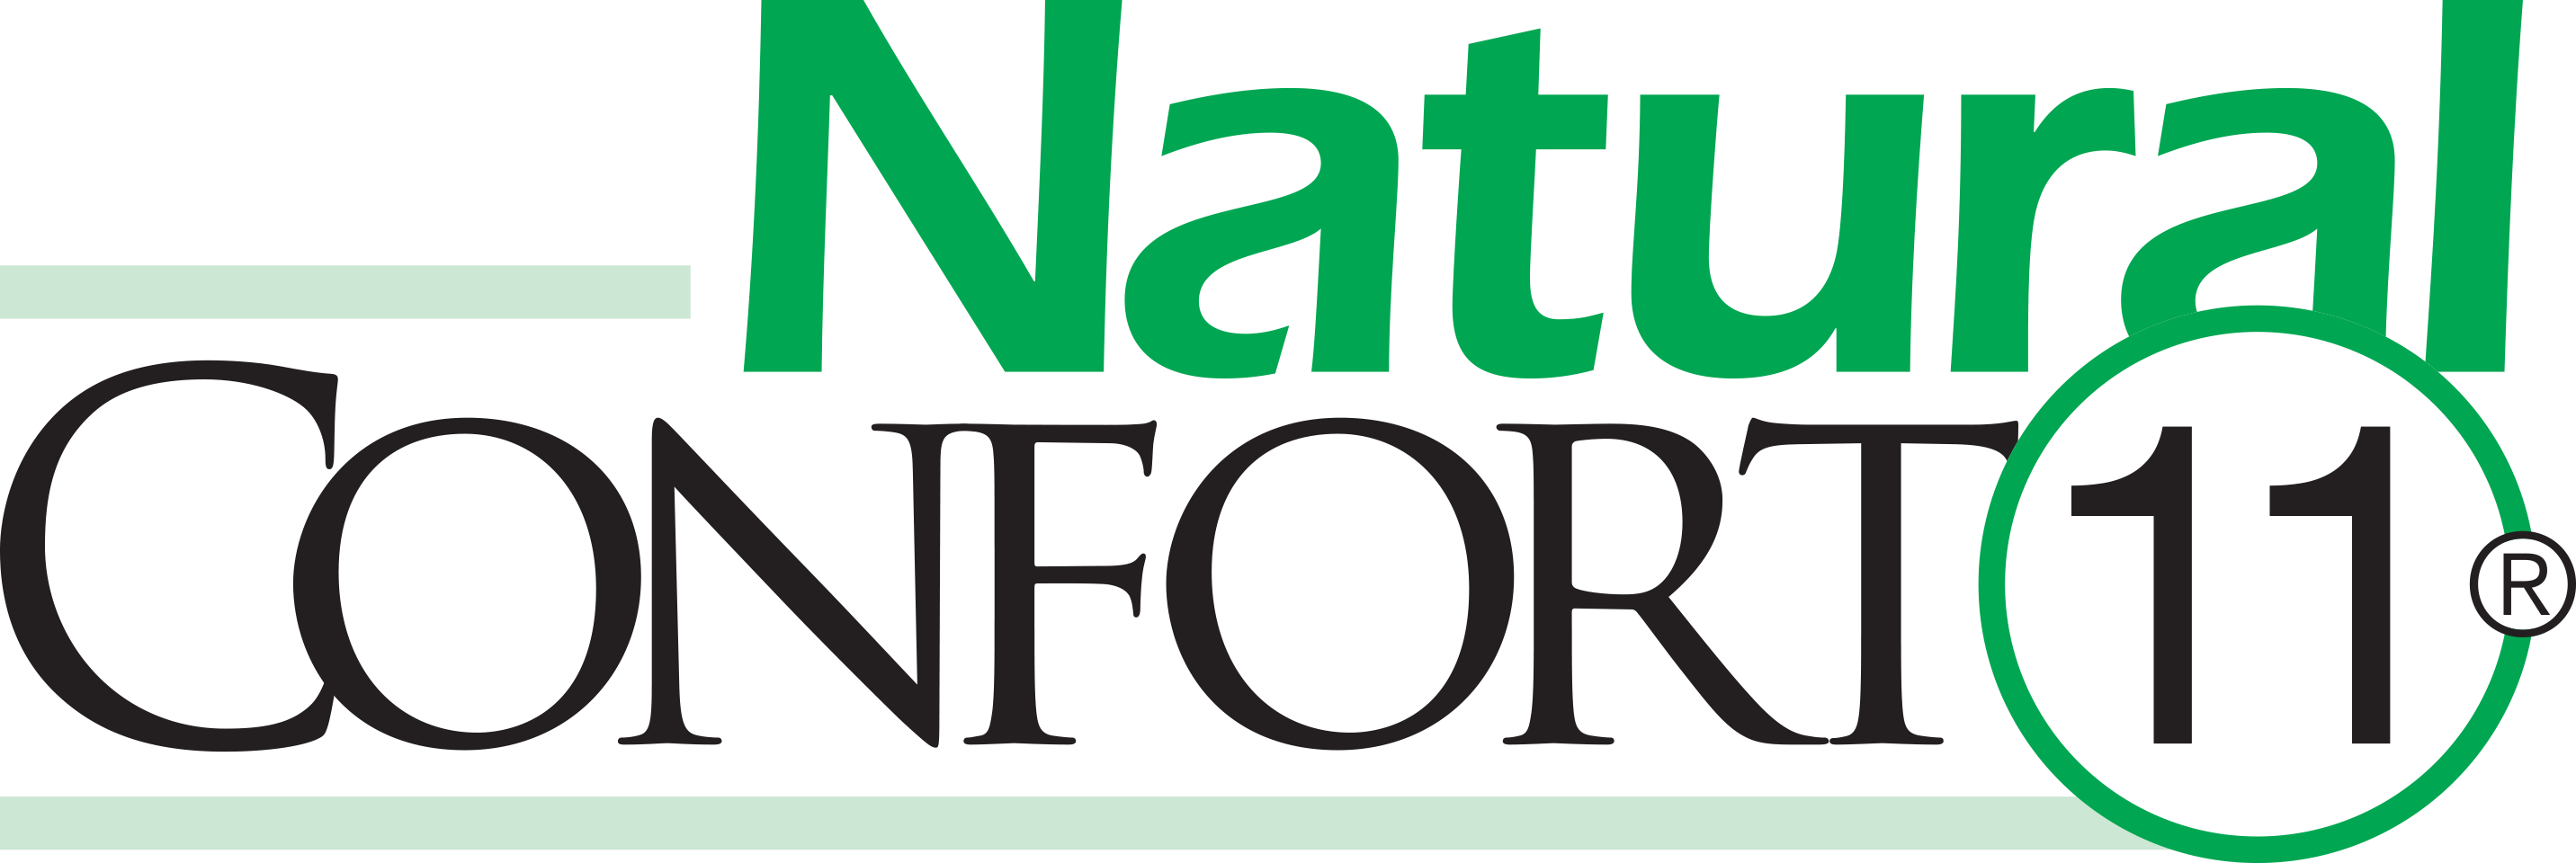 Natural Confort logo